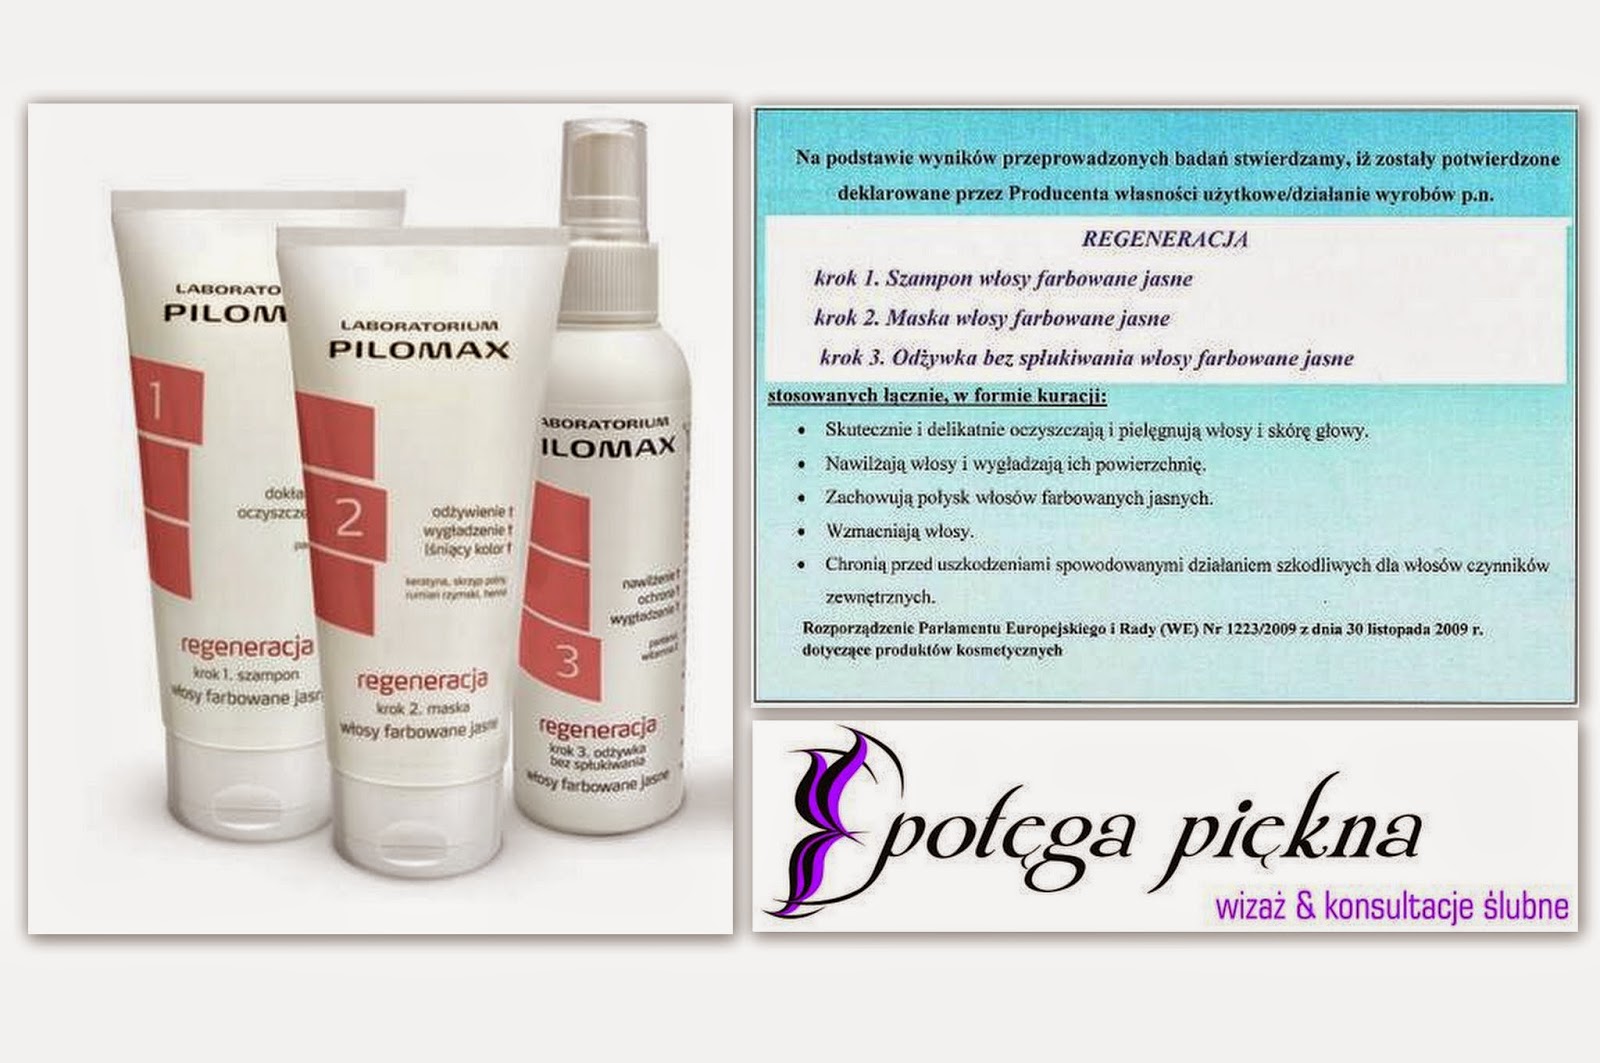 Pilomax - zestaw kosmetyków do włosów farbowanych jasnych